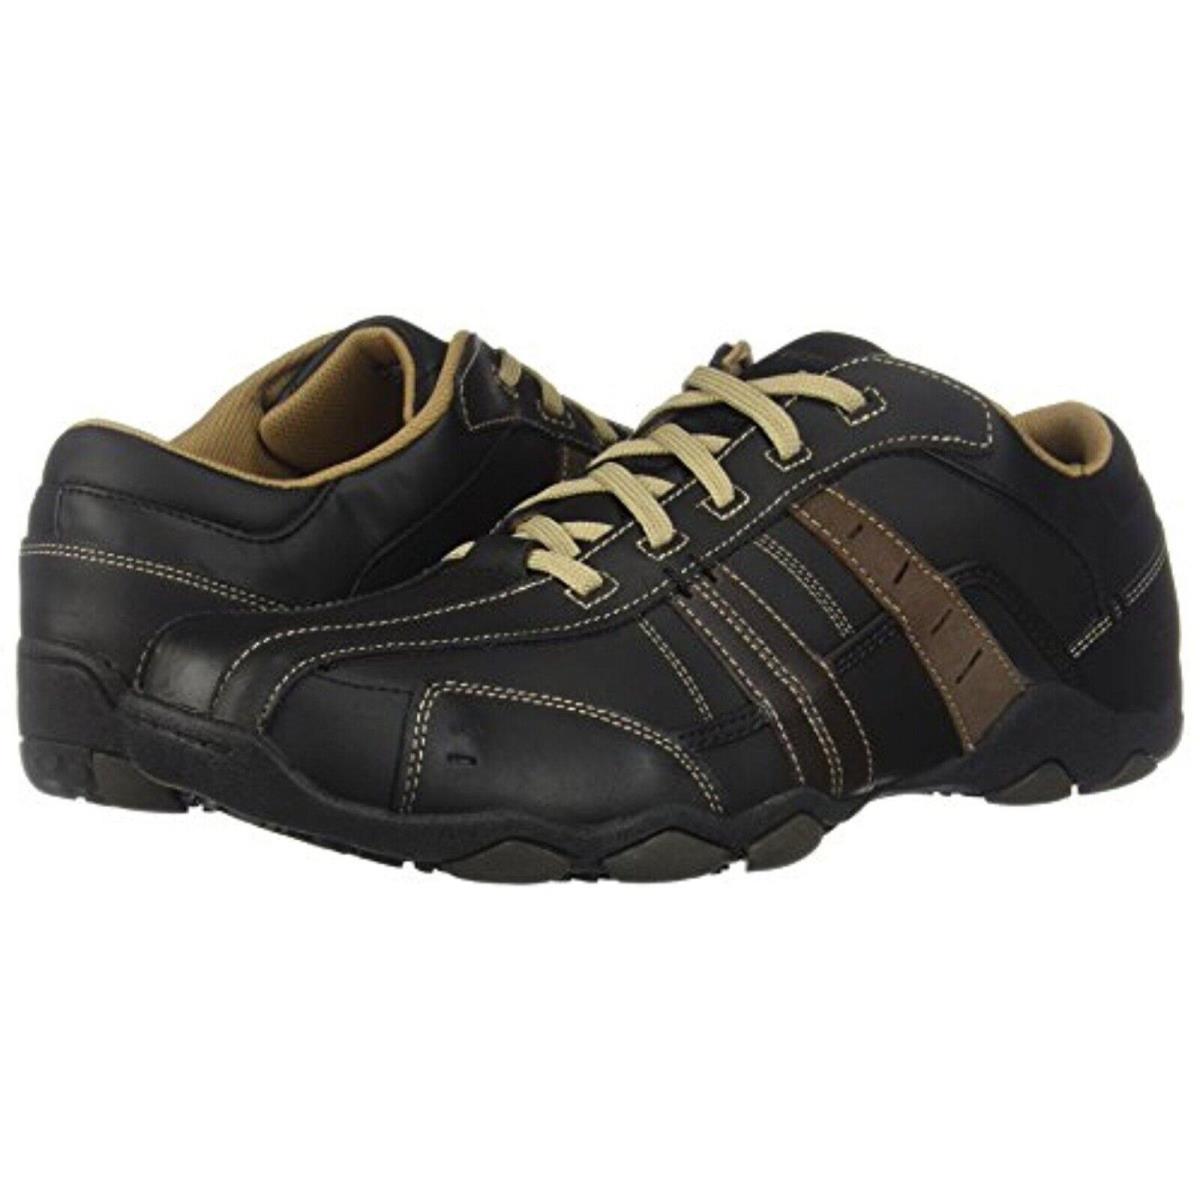 Skechers Men s Diameter Vassell Memory Foam Leather Shoes 62607 Bktn Size 9.5